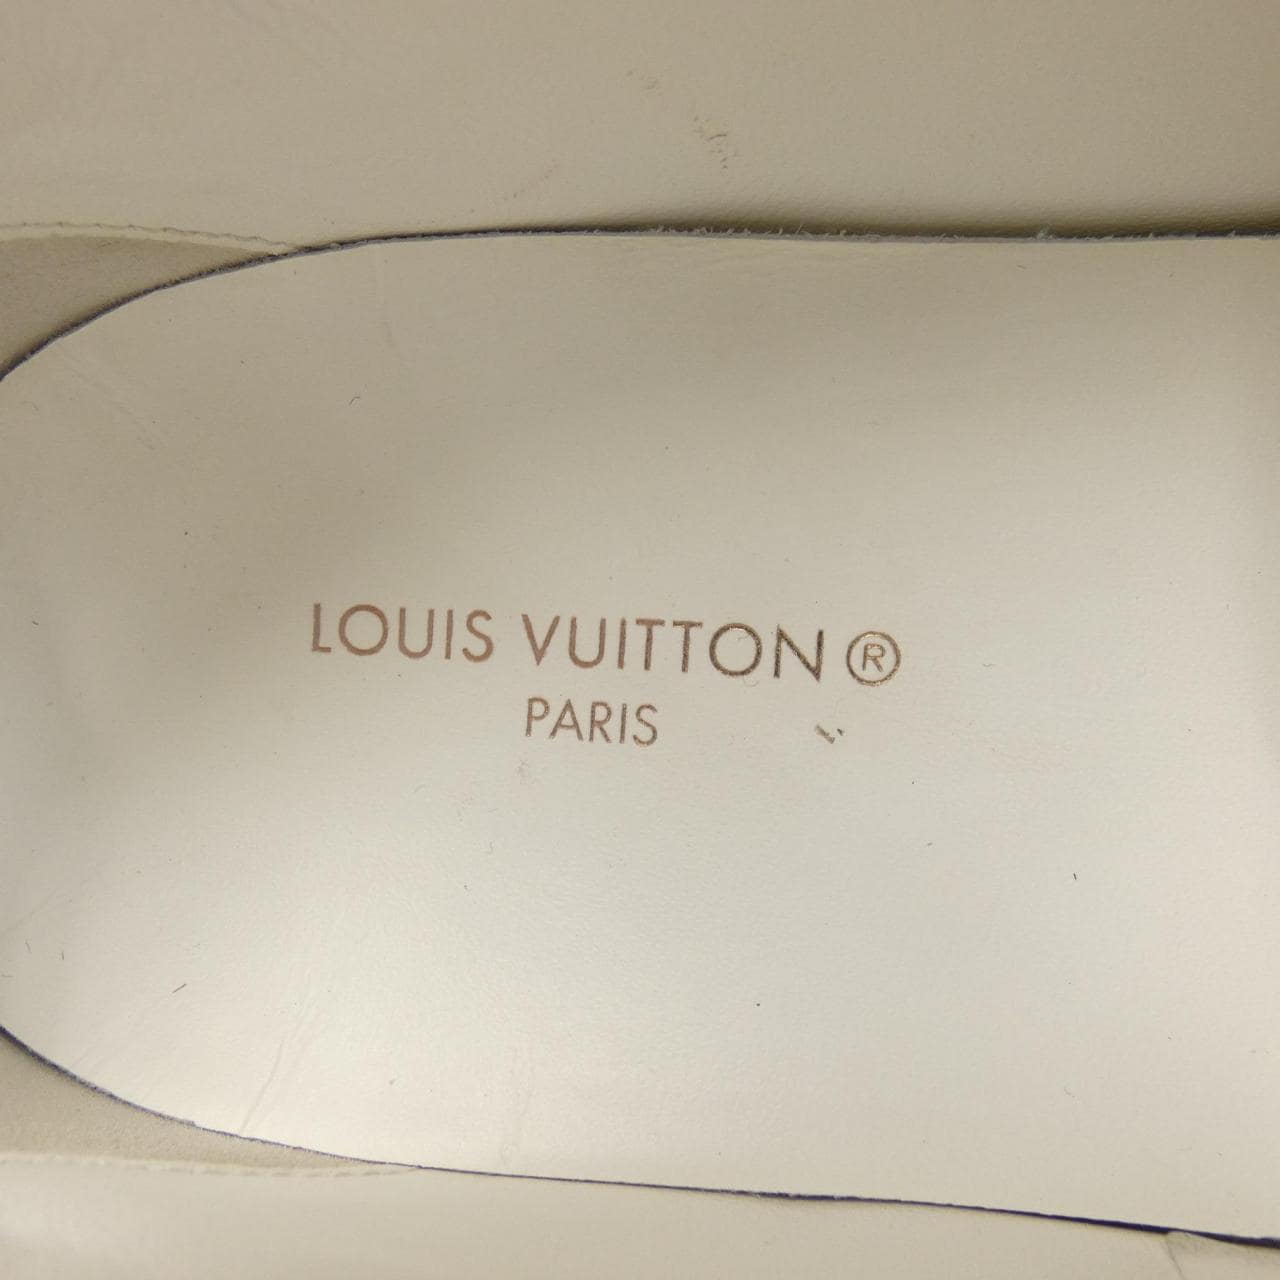 LOUIS VUITTON運動鞋